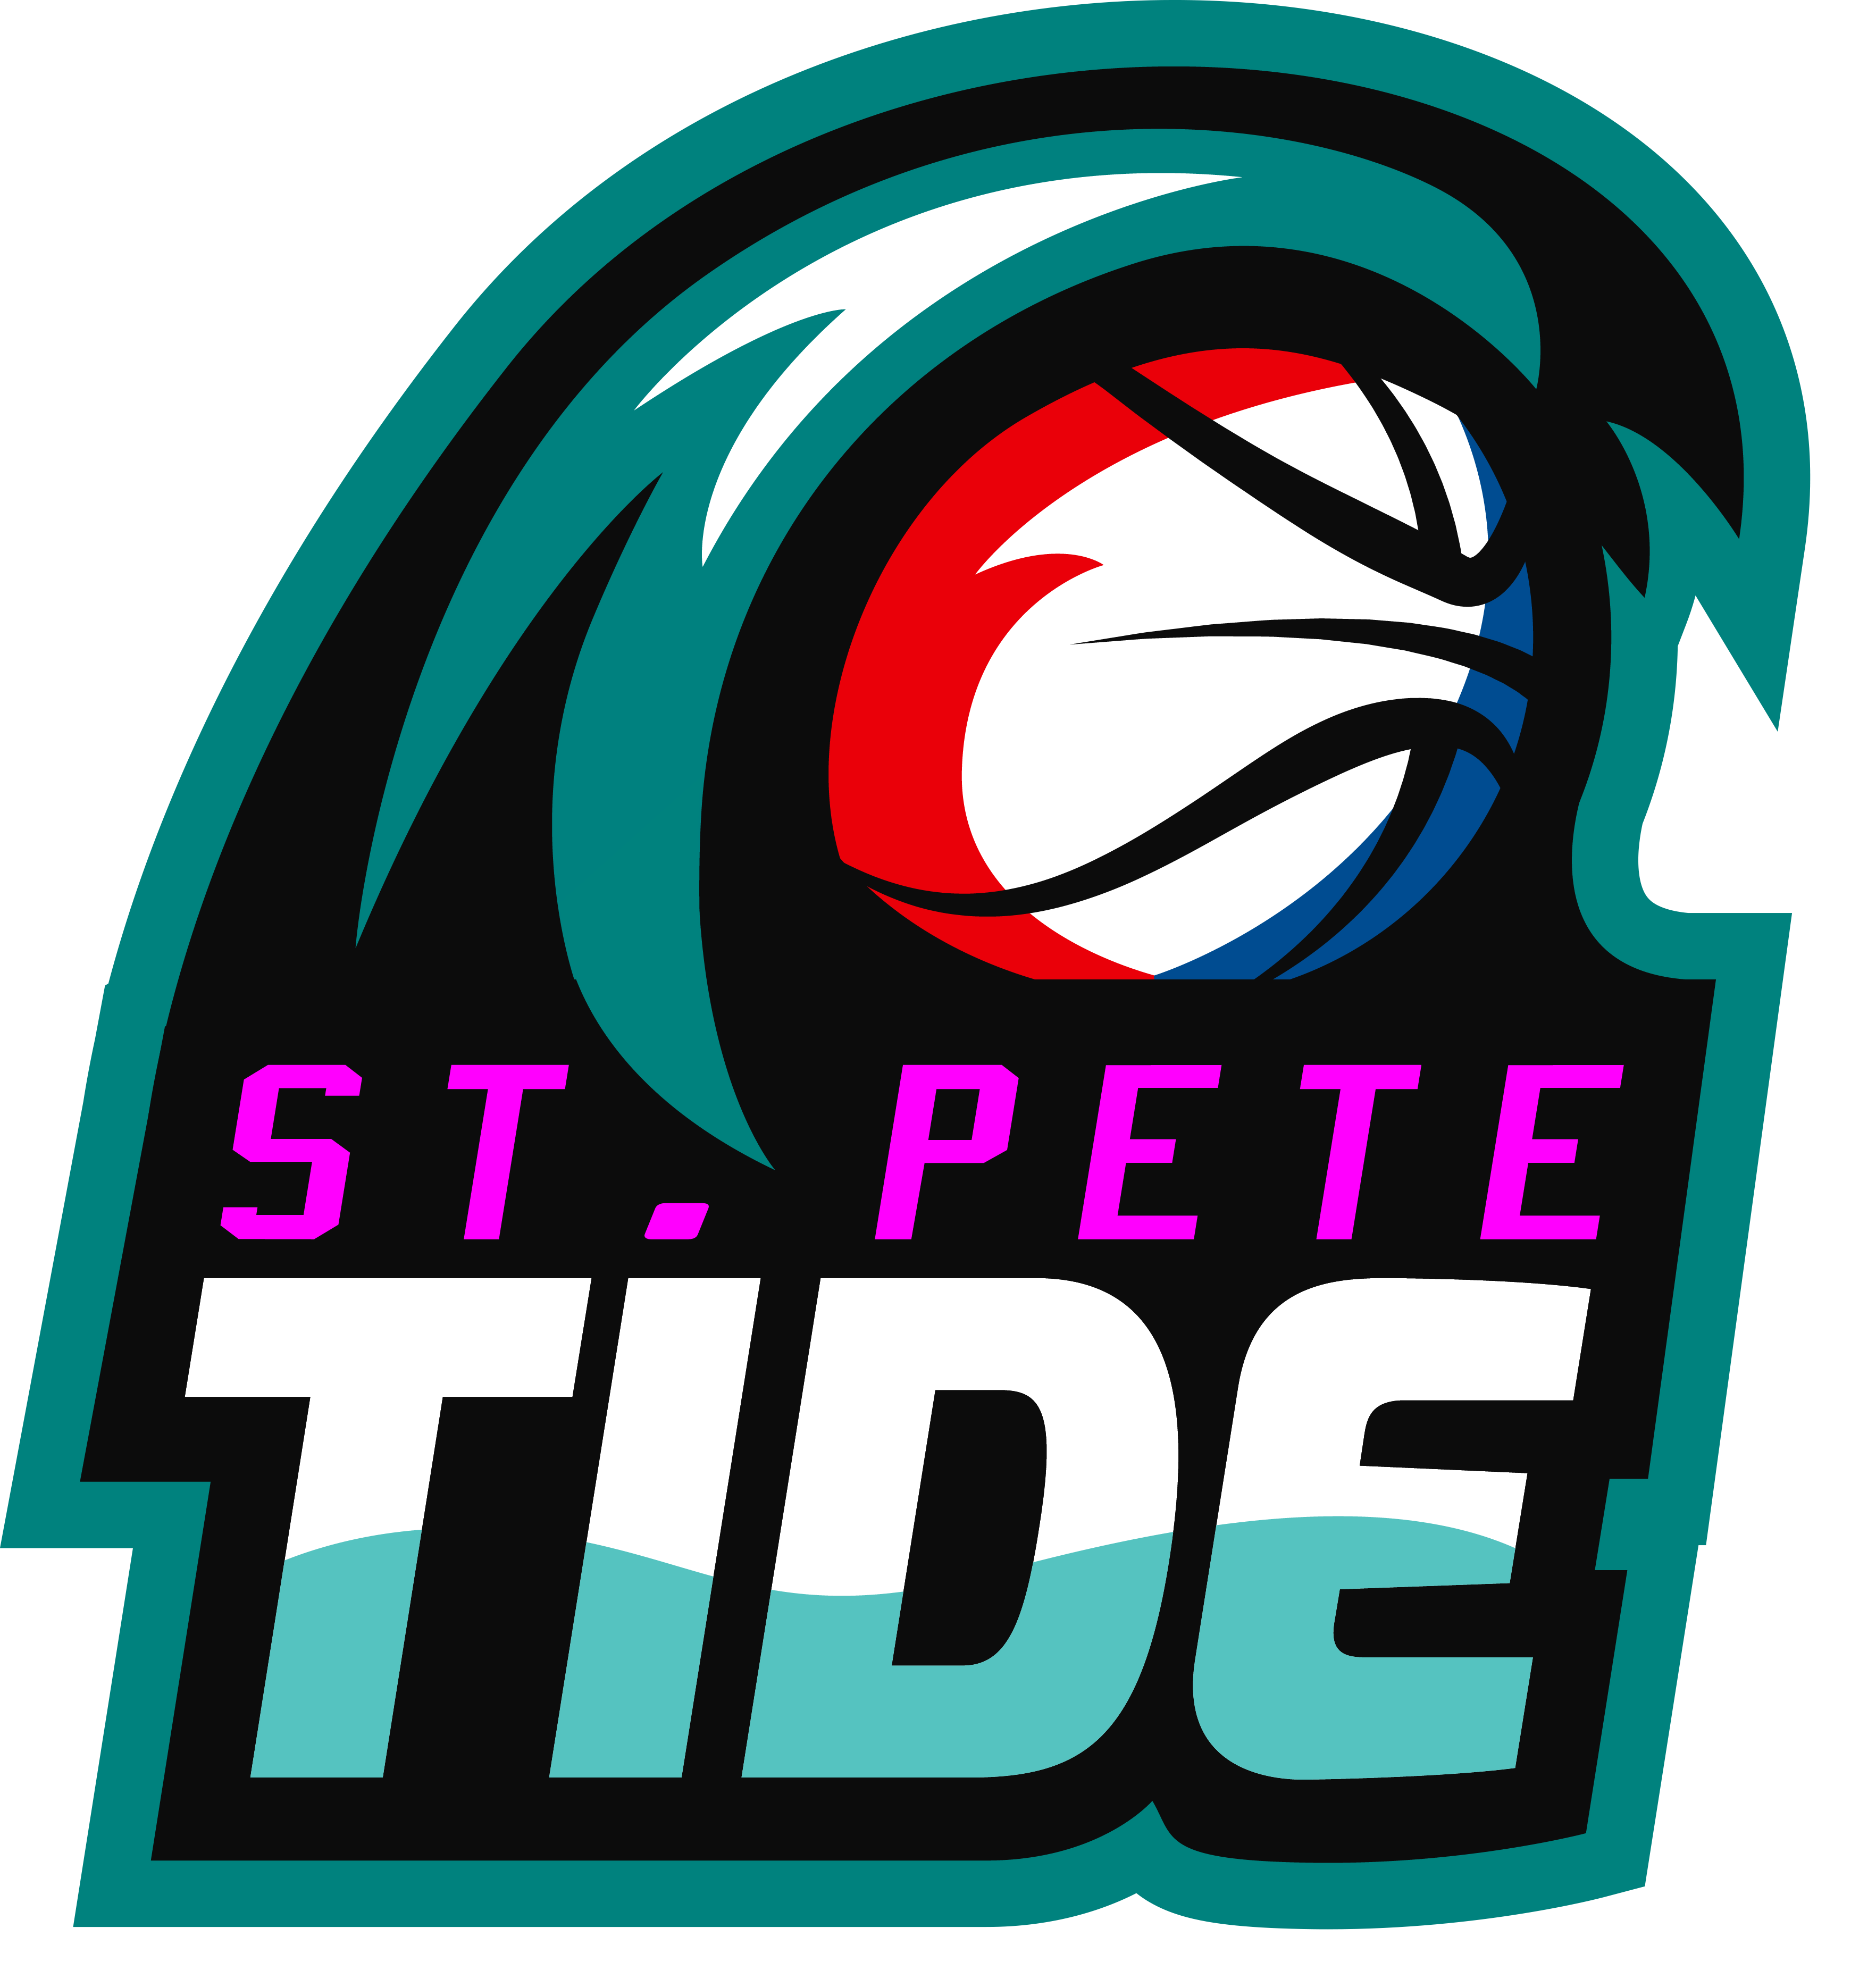 St. Pete Tide logo